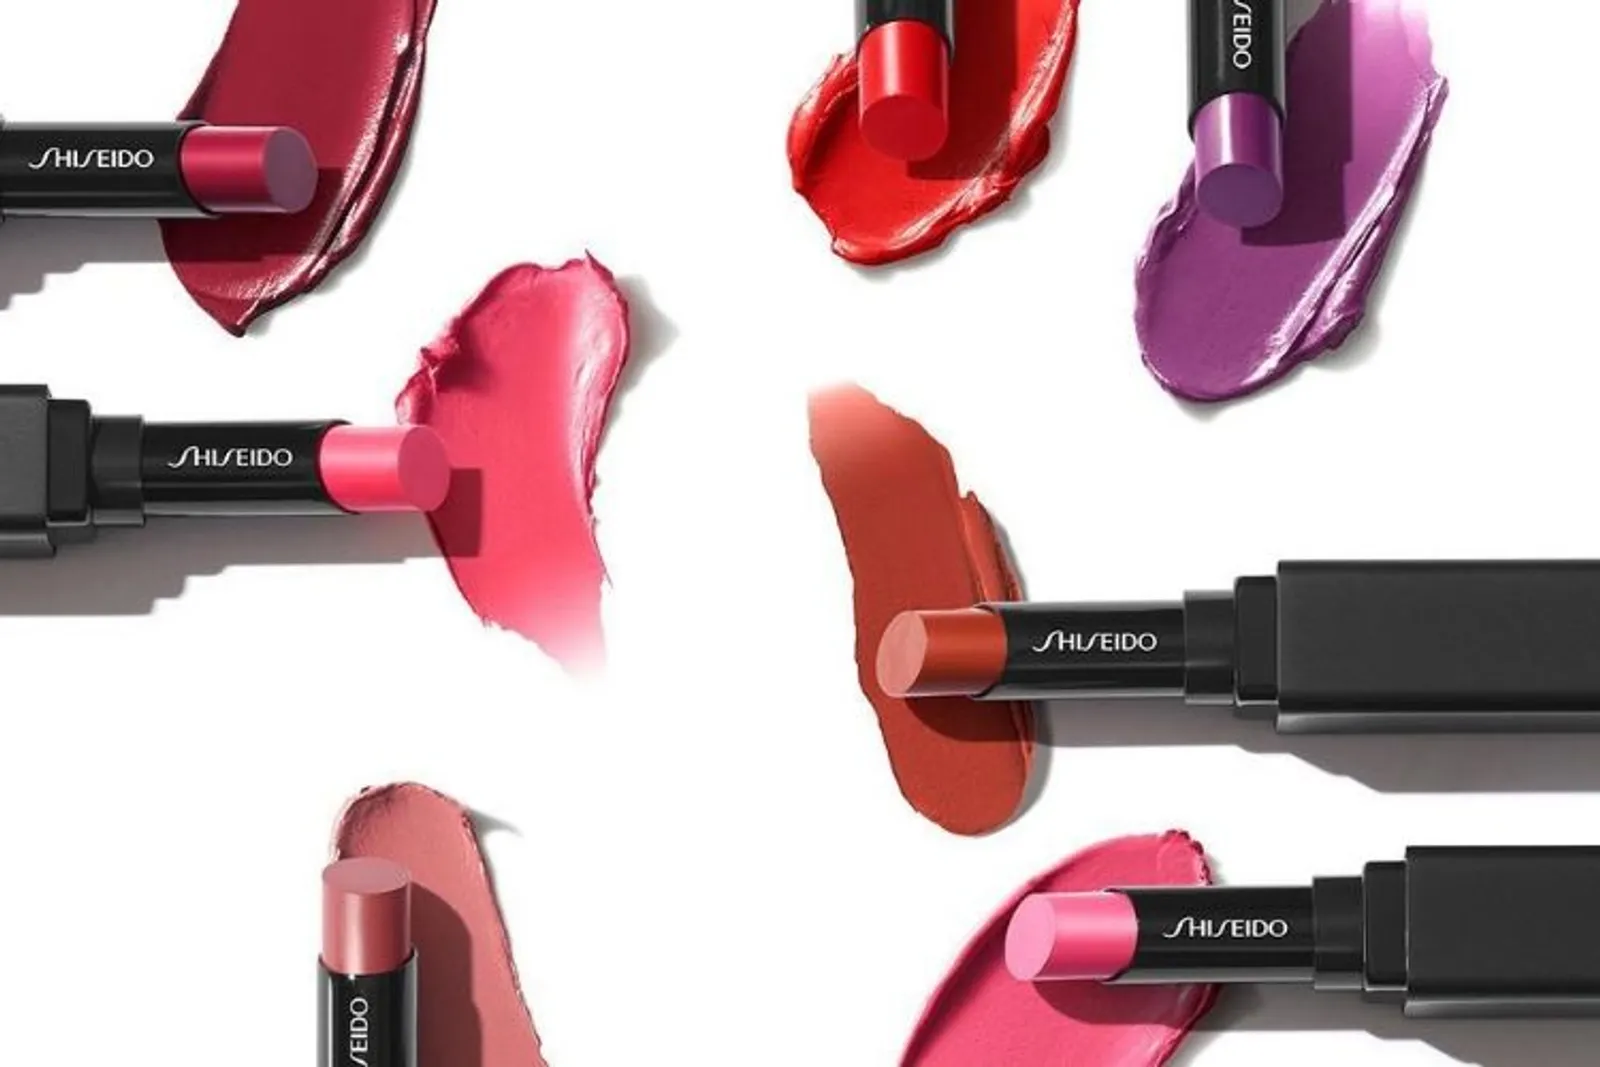 Shiseido Hadirkan 21 Produk Makeup dengan 4 Jenis Tekstur yang Ringan